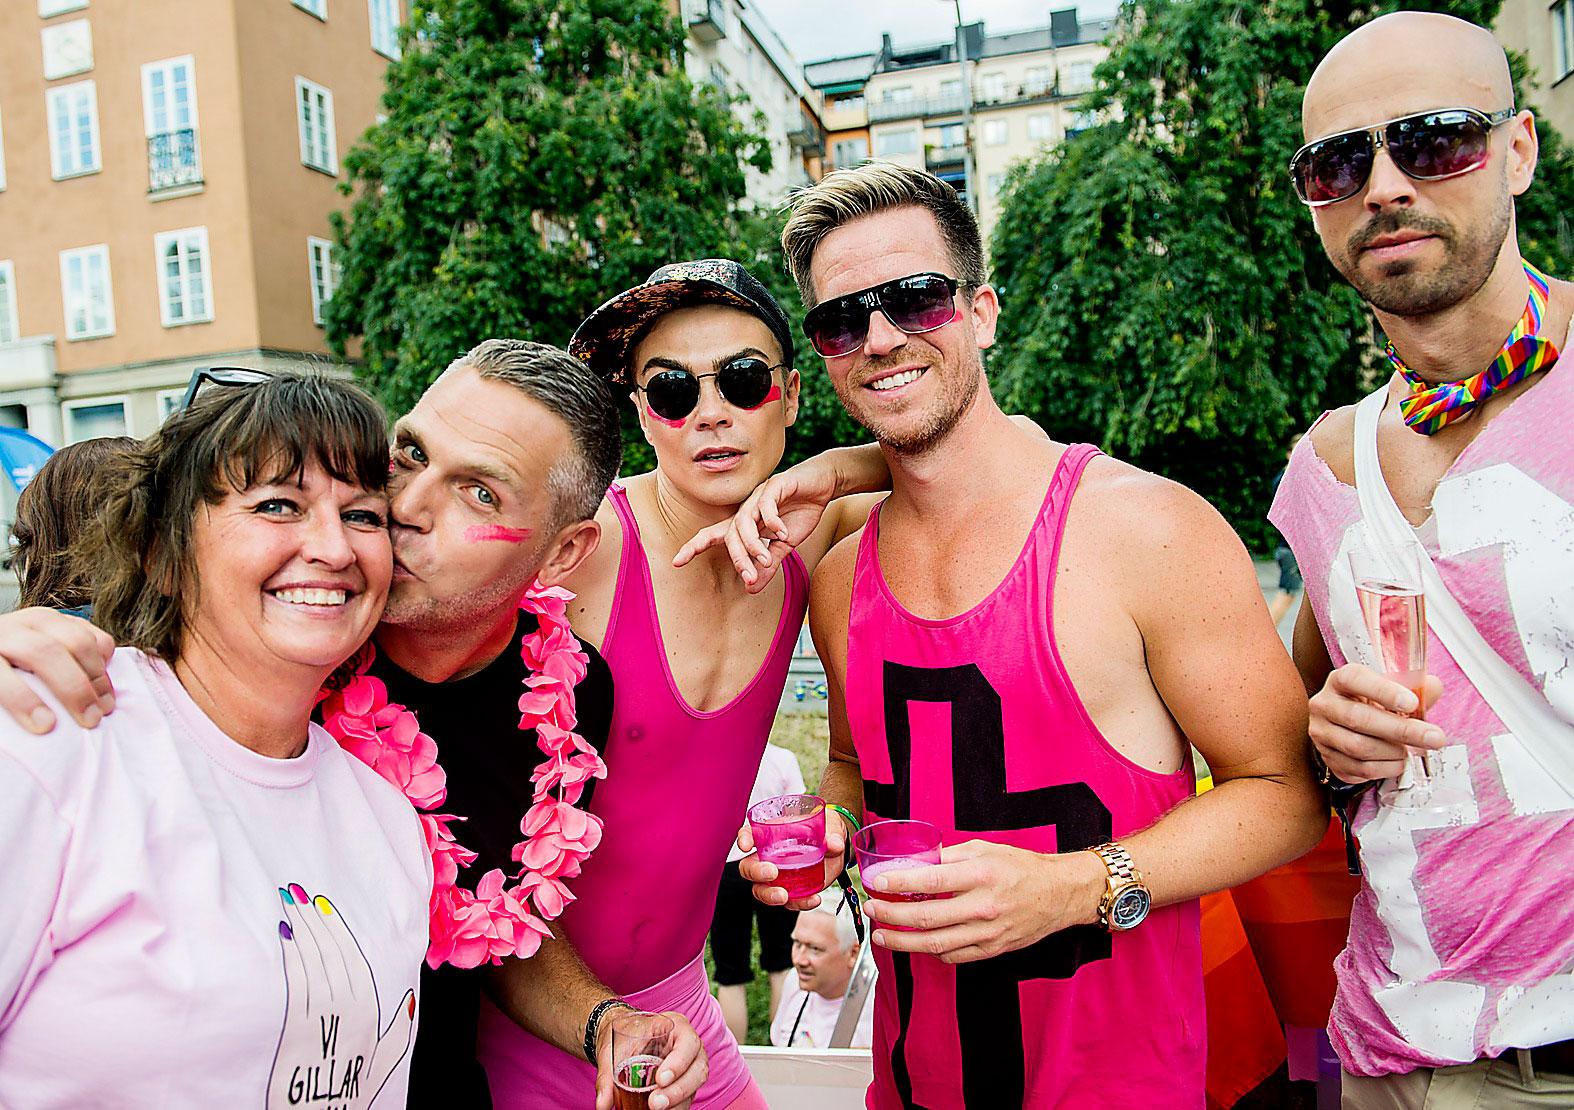 Sofia Olsson Olsén och Schibsteds informationsdirektör Fredrik Lindén tillsammans med Kristian Kaspersen, Göran Svensson och Henrik Wallin på Sportbladets vagn i Prideparaden förra året.